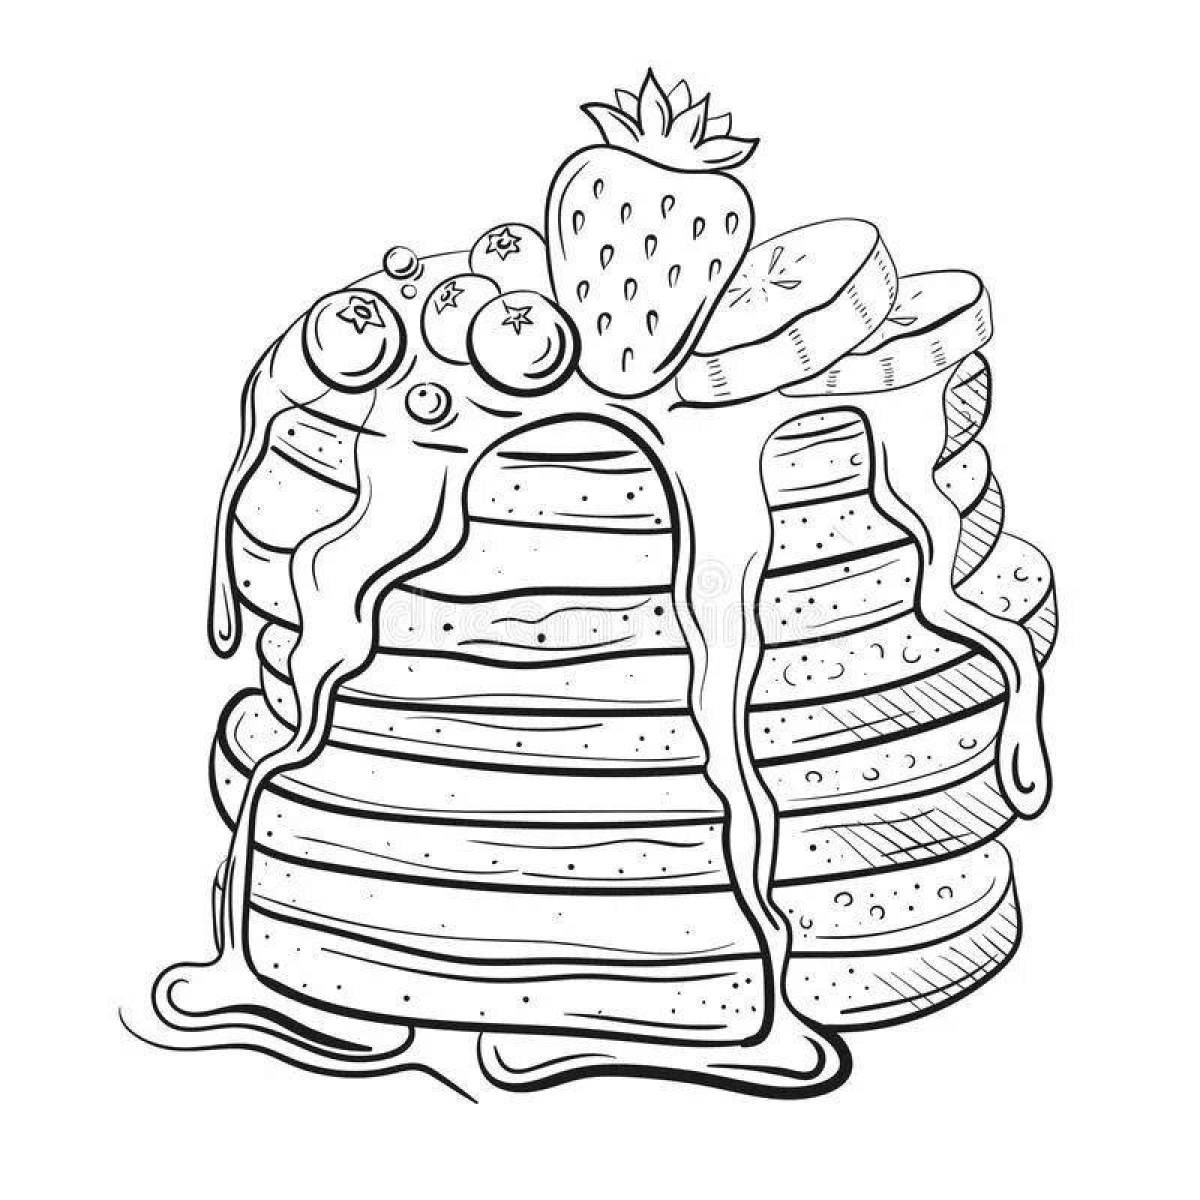 Crispy pancake coloring page